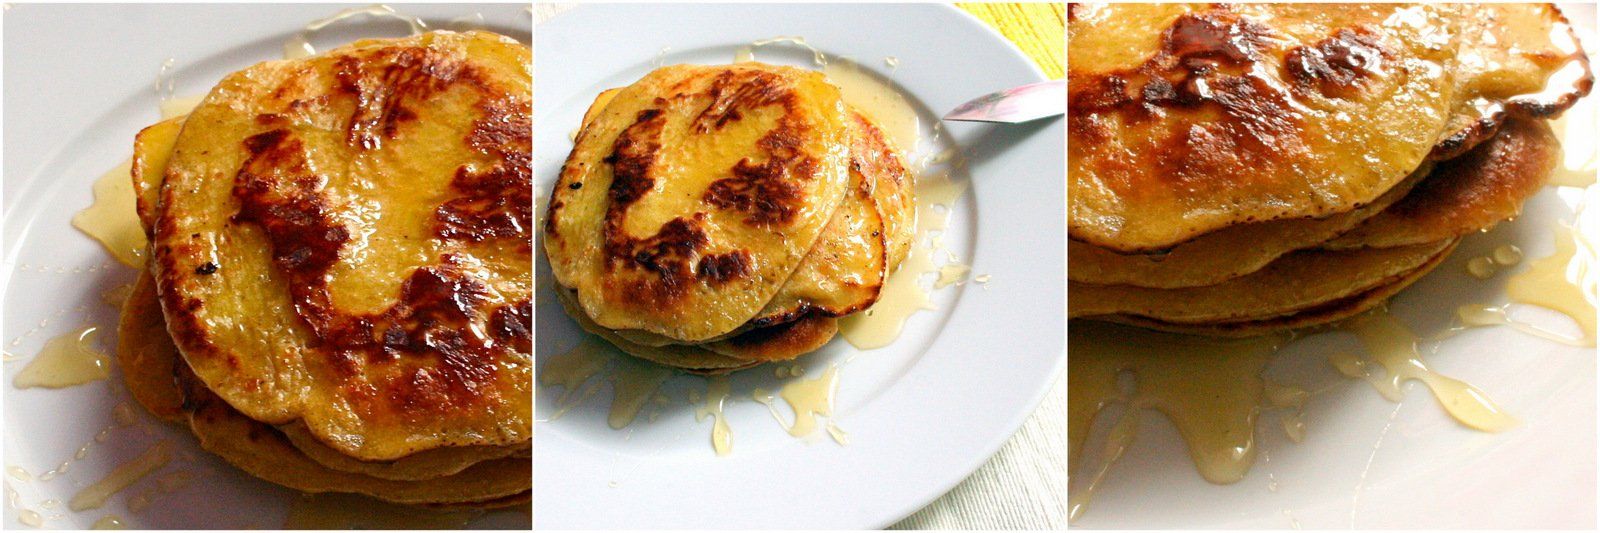 Colazione energetica: Pancake al miele